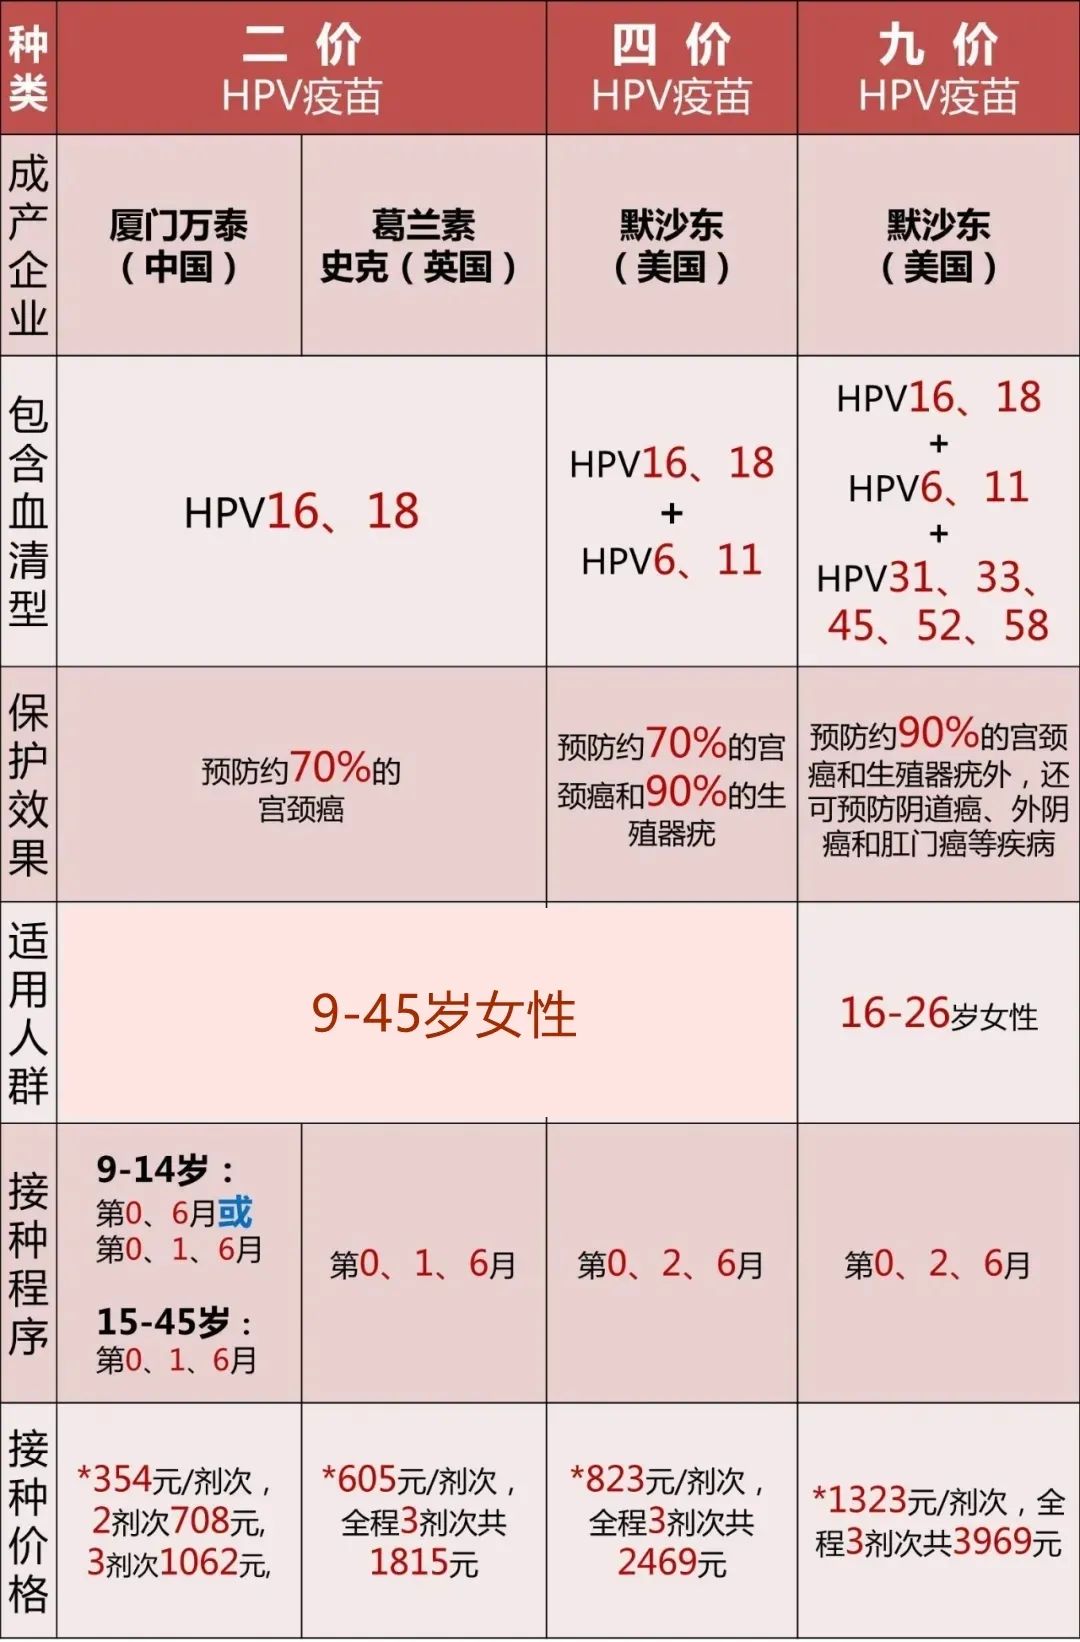 *上表中的接种价格仅供参考,以当地价格为准!我应该选择哪种hpv疫苗?